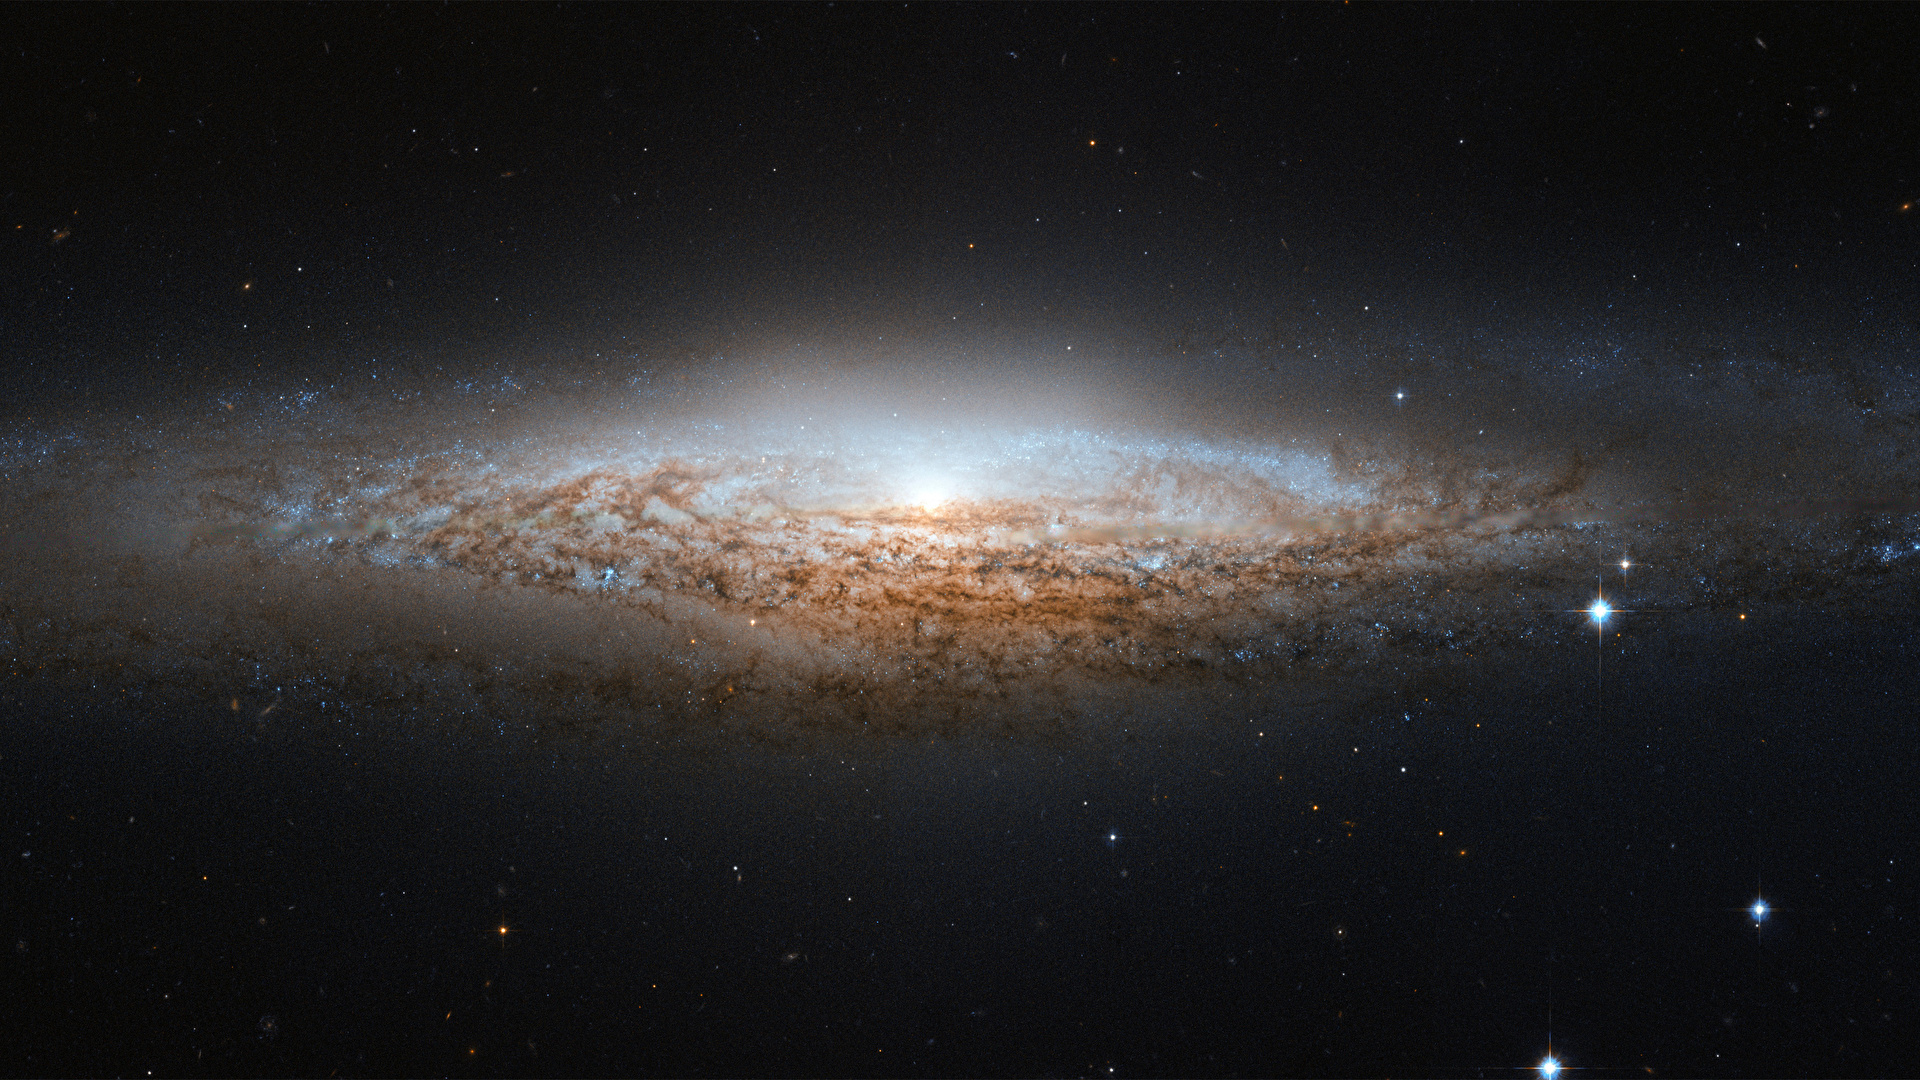 壁紙 19x1080 空間内の星雲 銀河 Ngc 26 宇宙空間 ダウンロード 写真